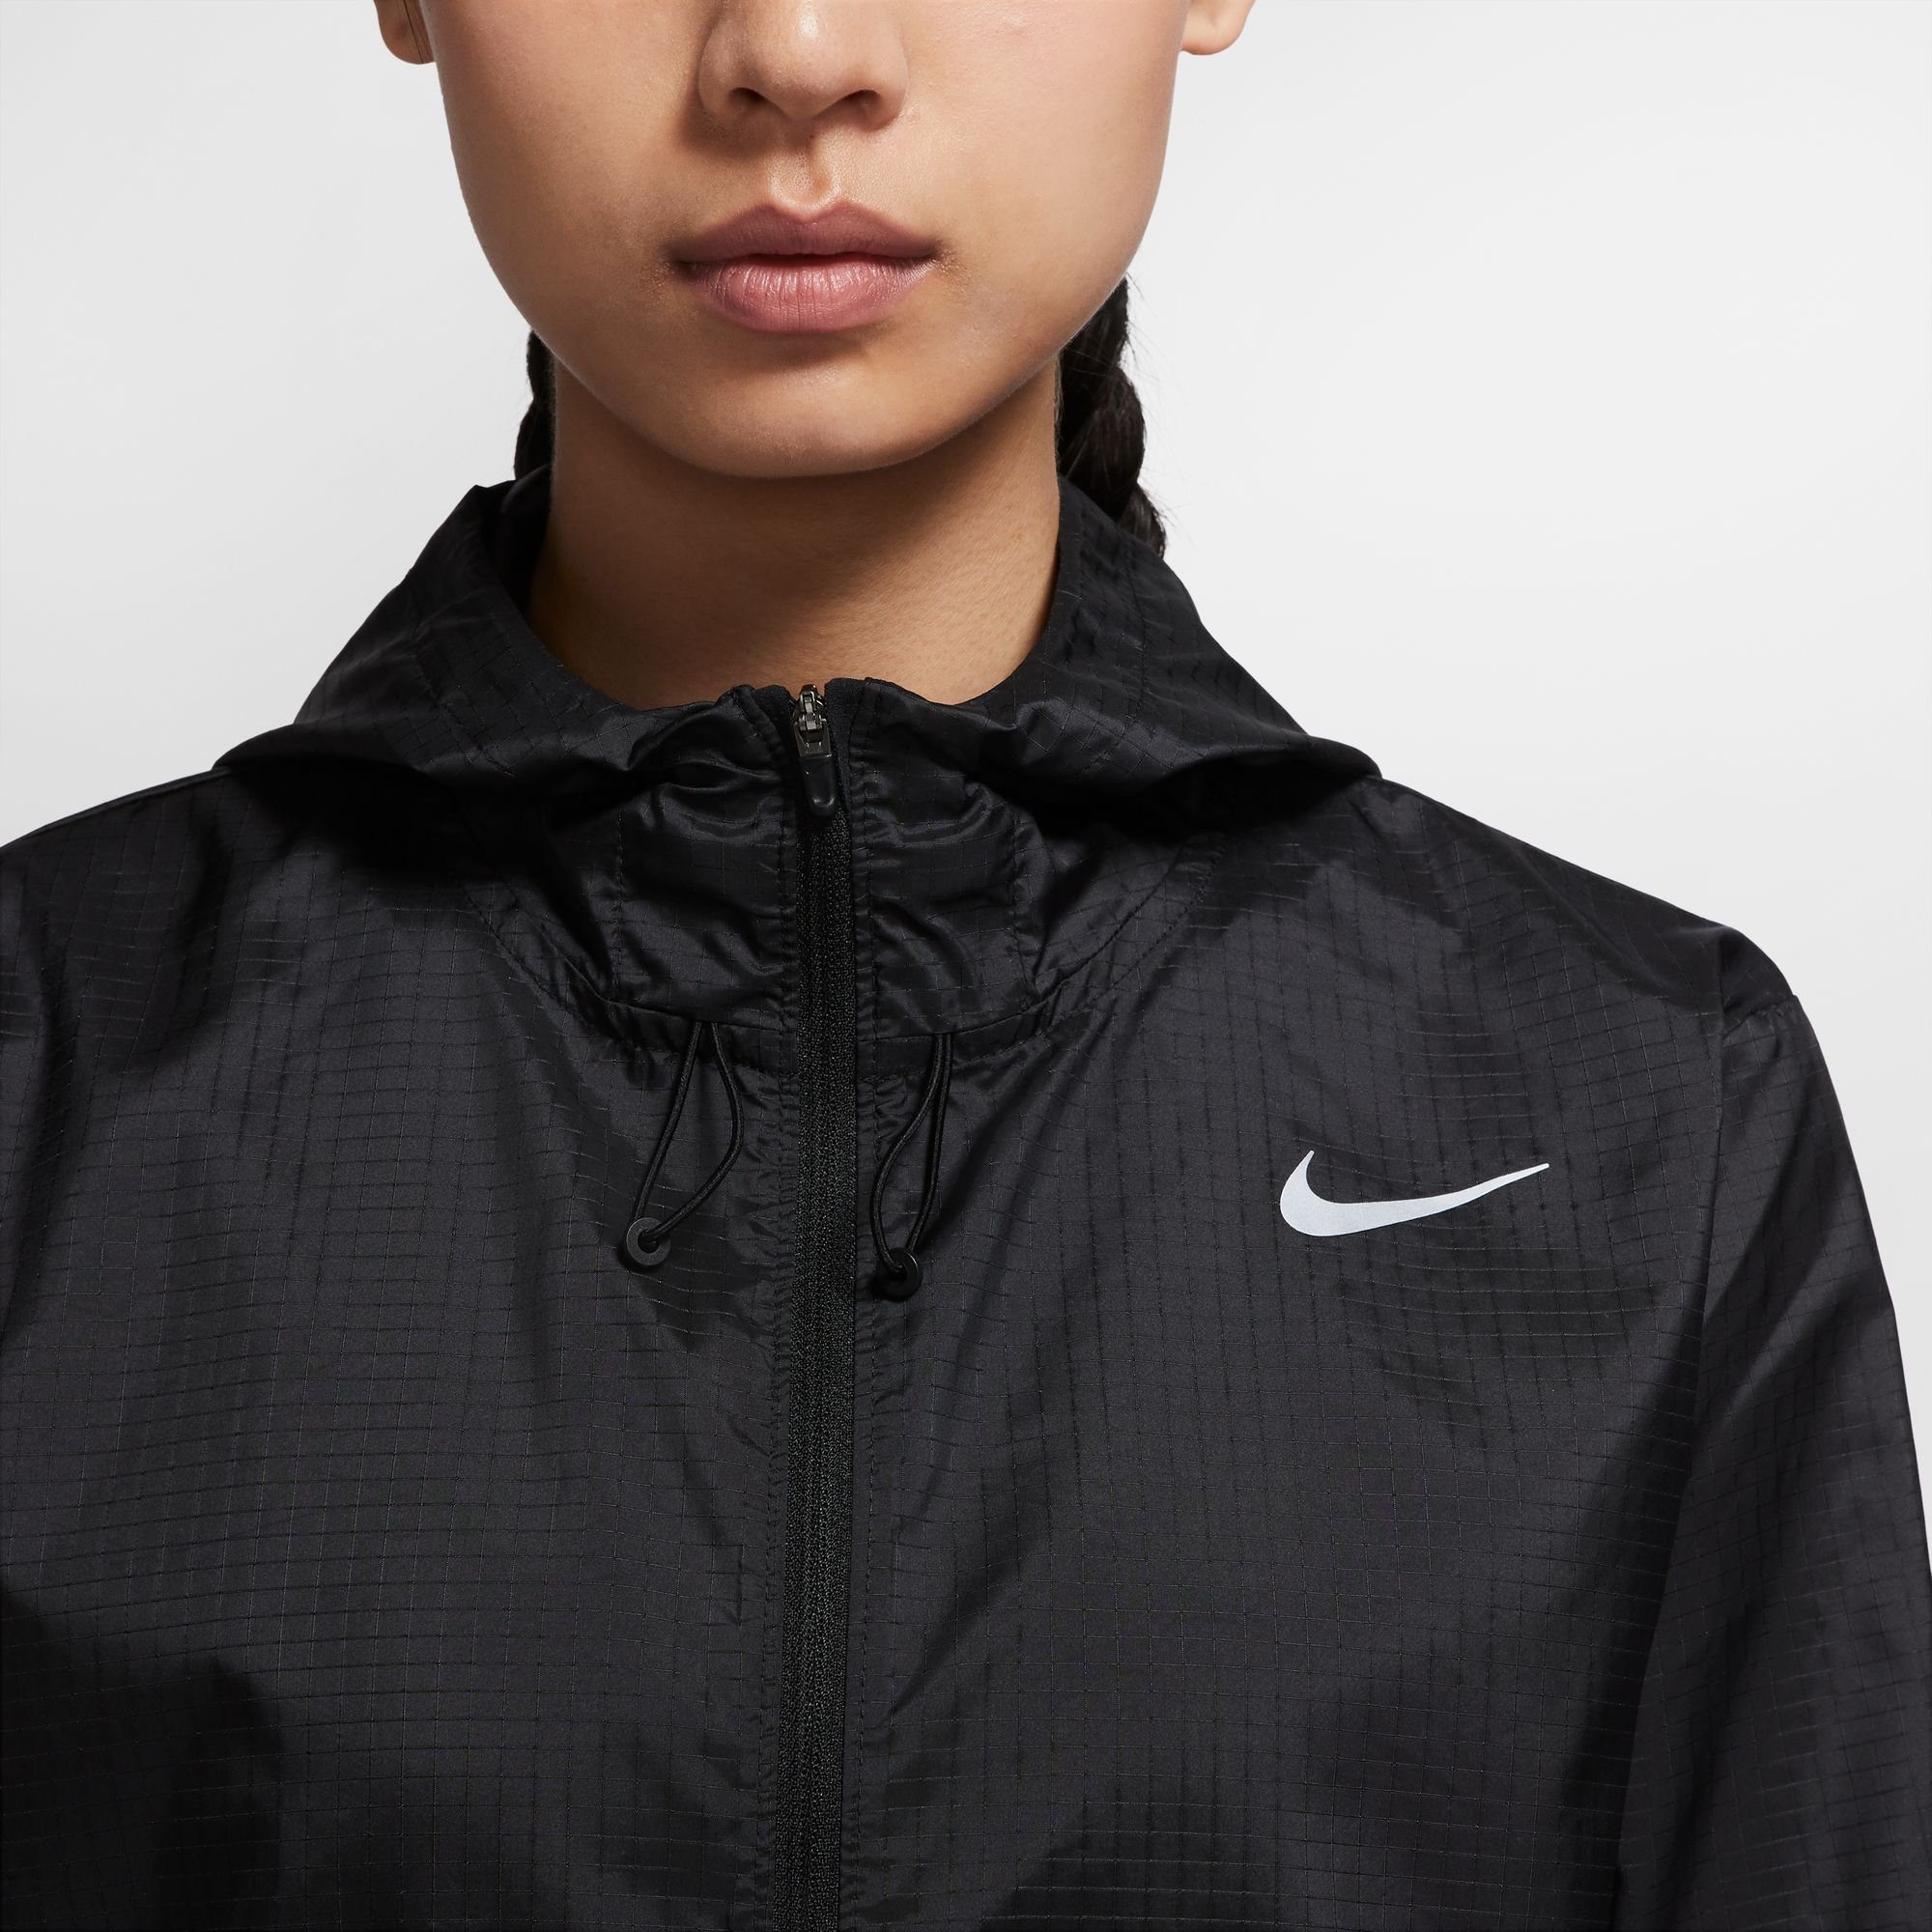 Essential Running Nike schwarz Laufjacke Jacket Women's